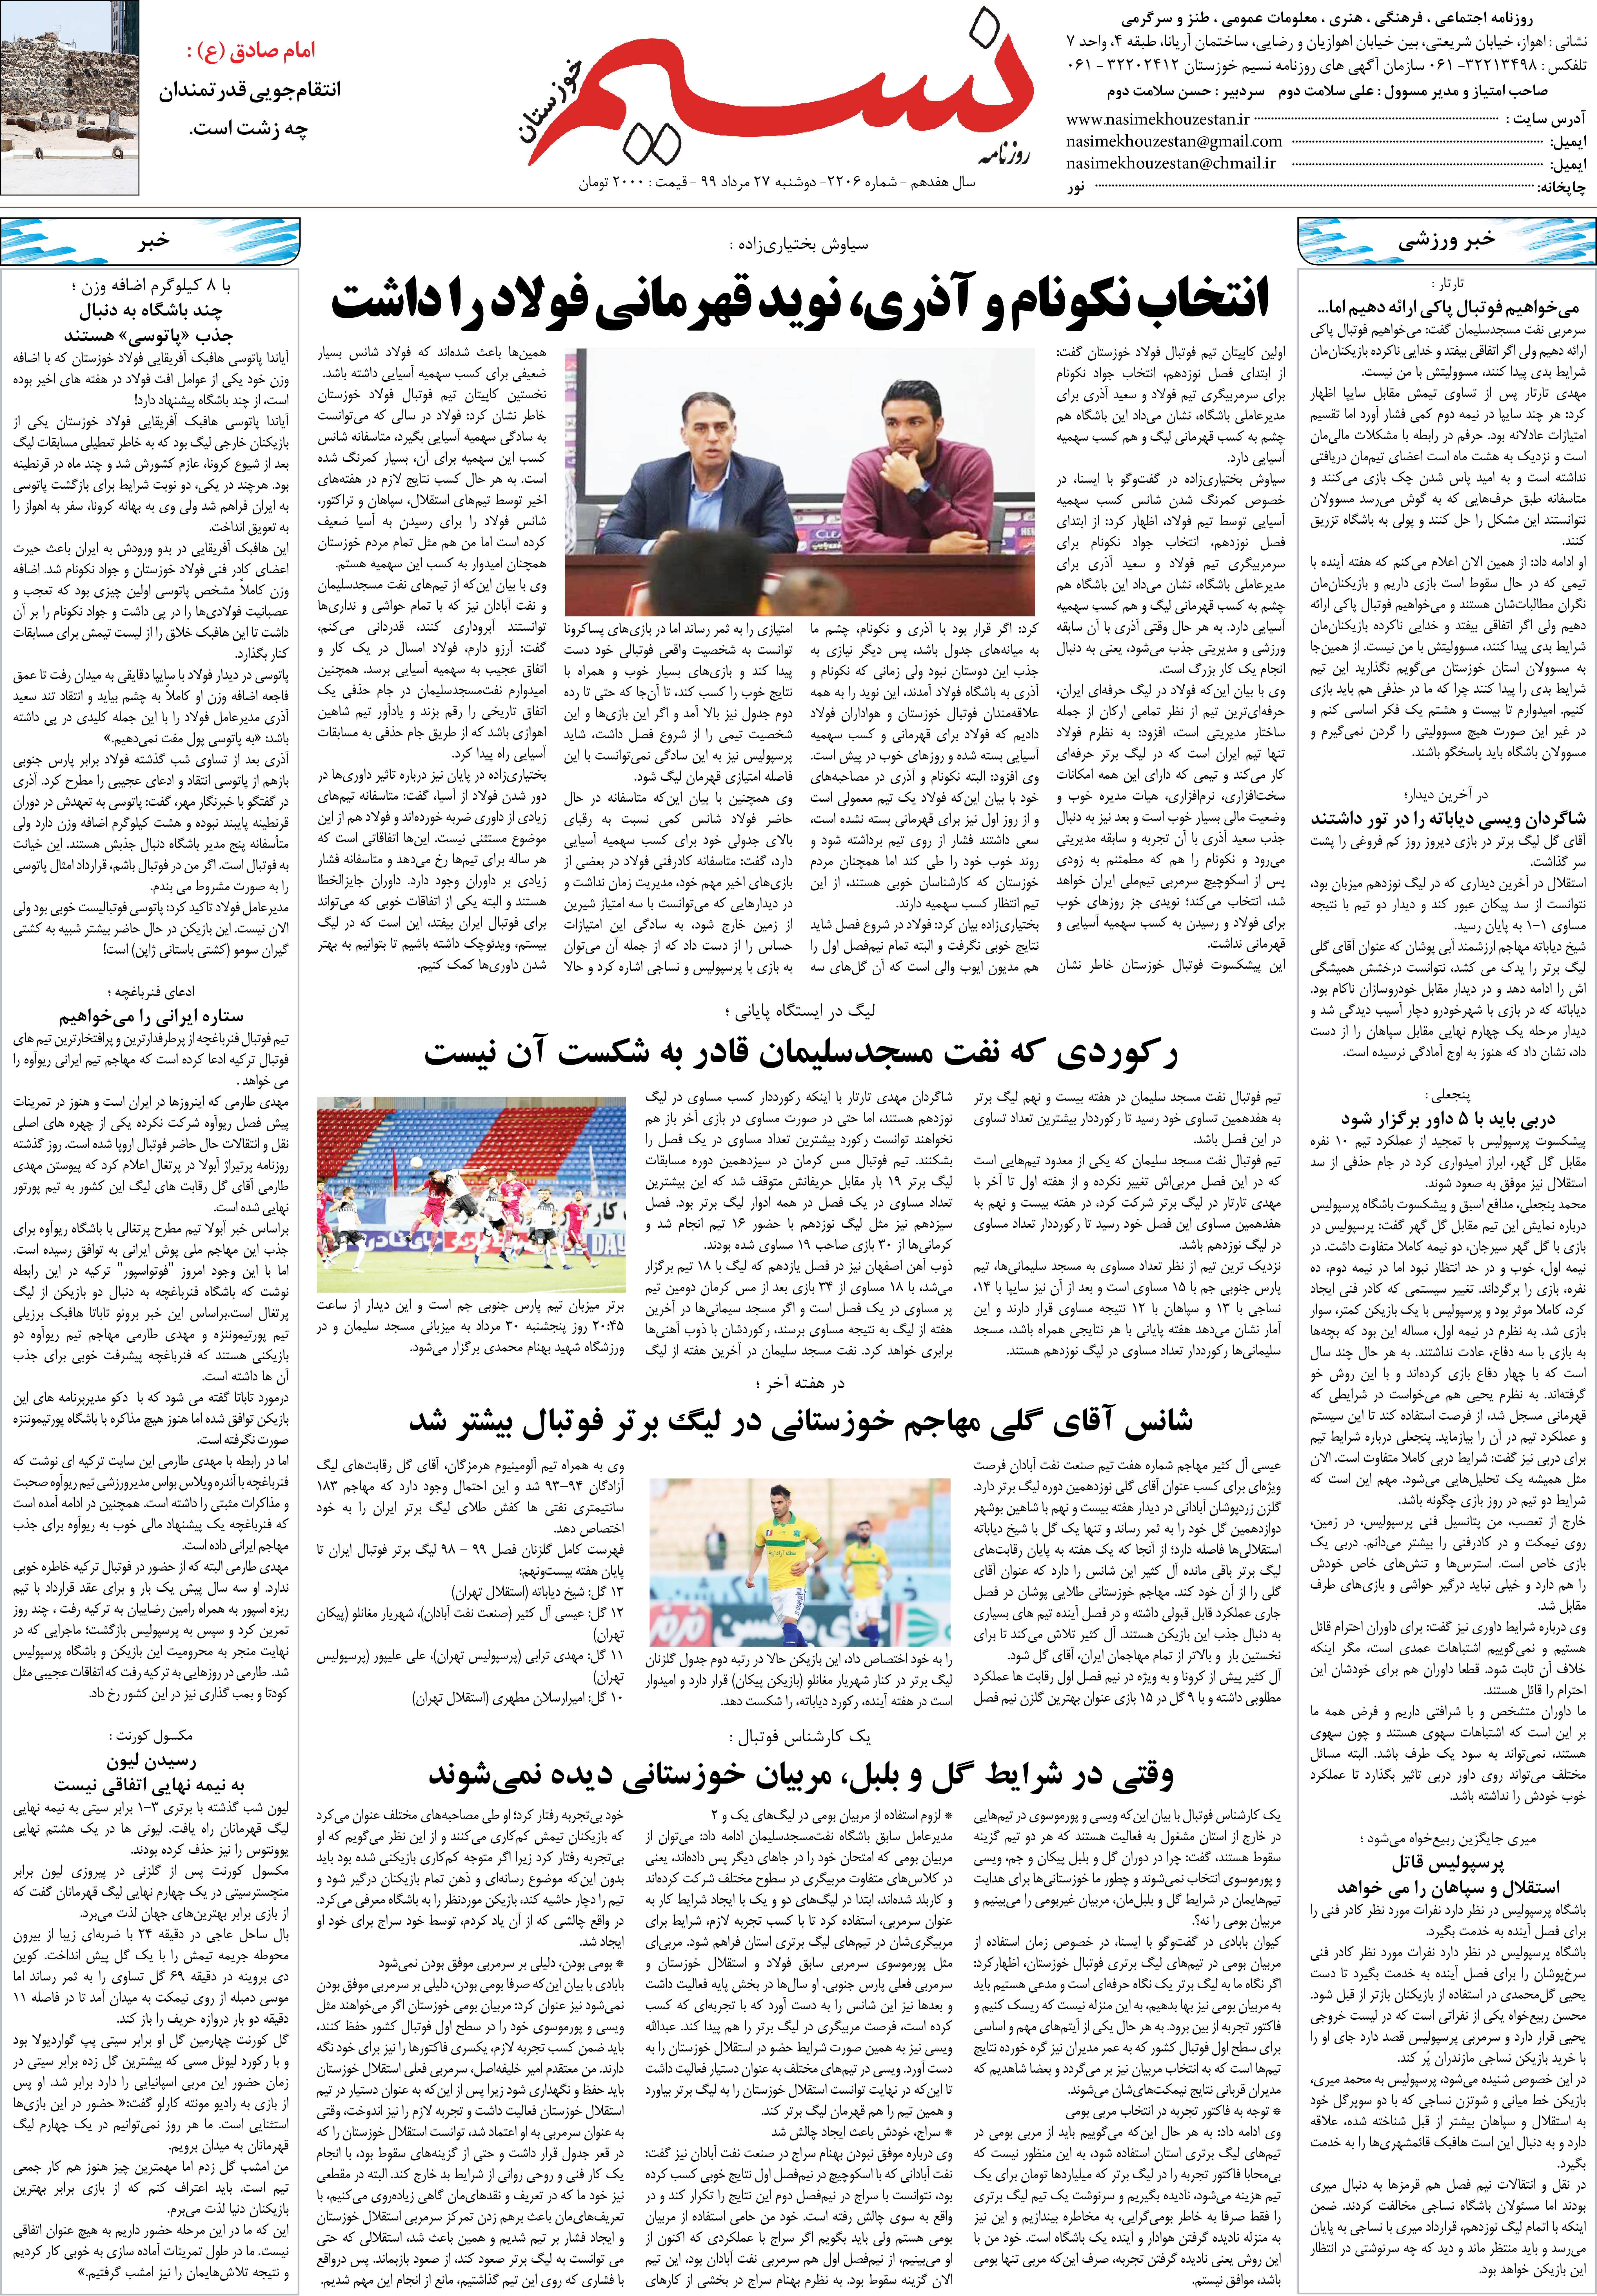 صفحه آخر روزنامه نسیم شماره 2206